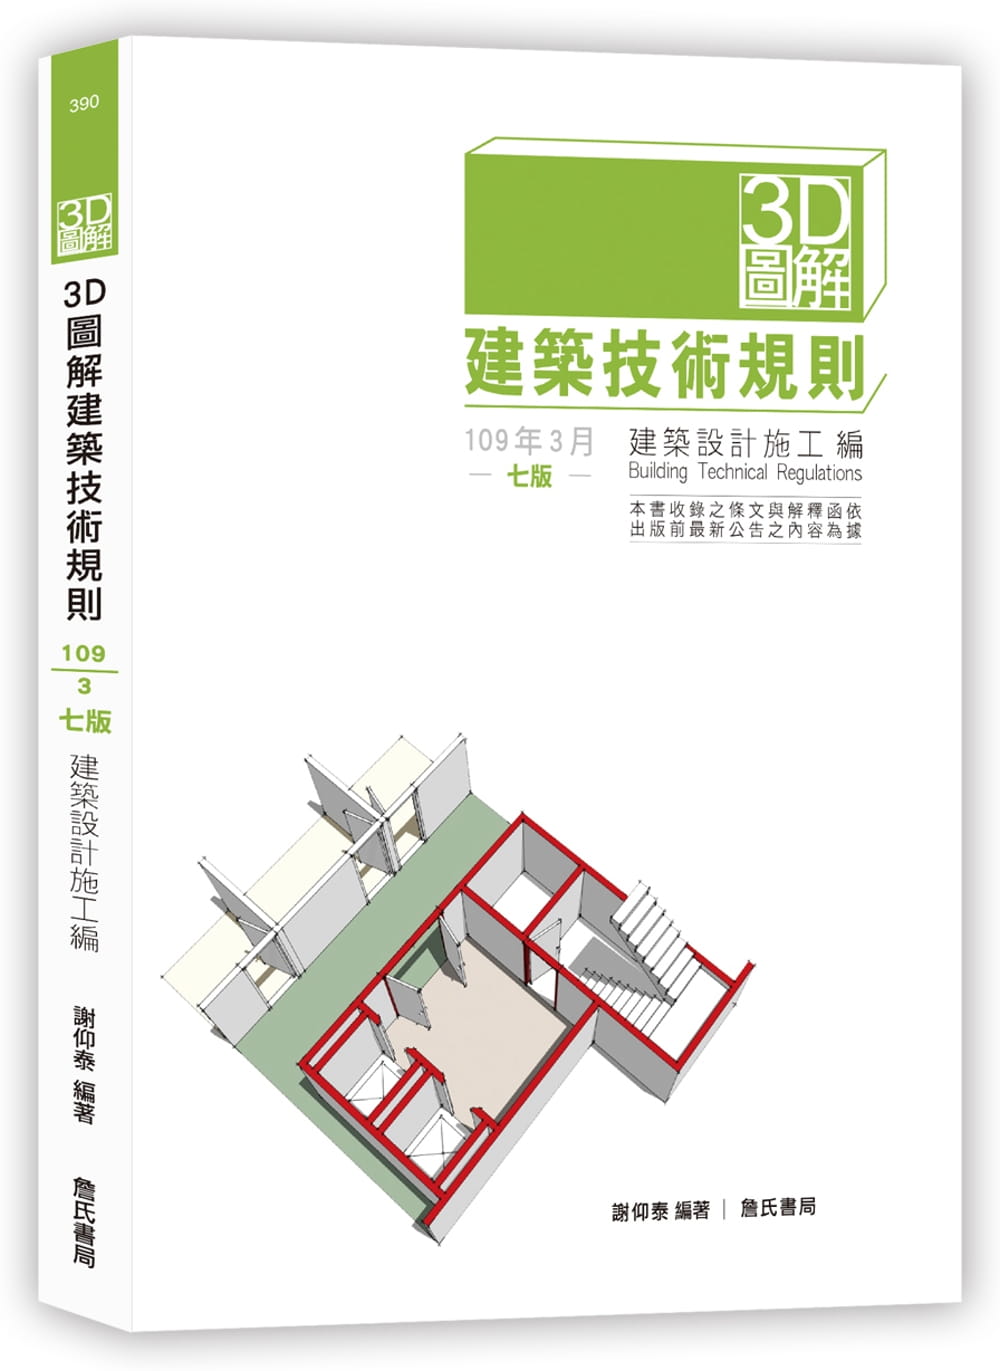 3D圖解建築技術規則建築設計施工編（七版）